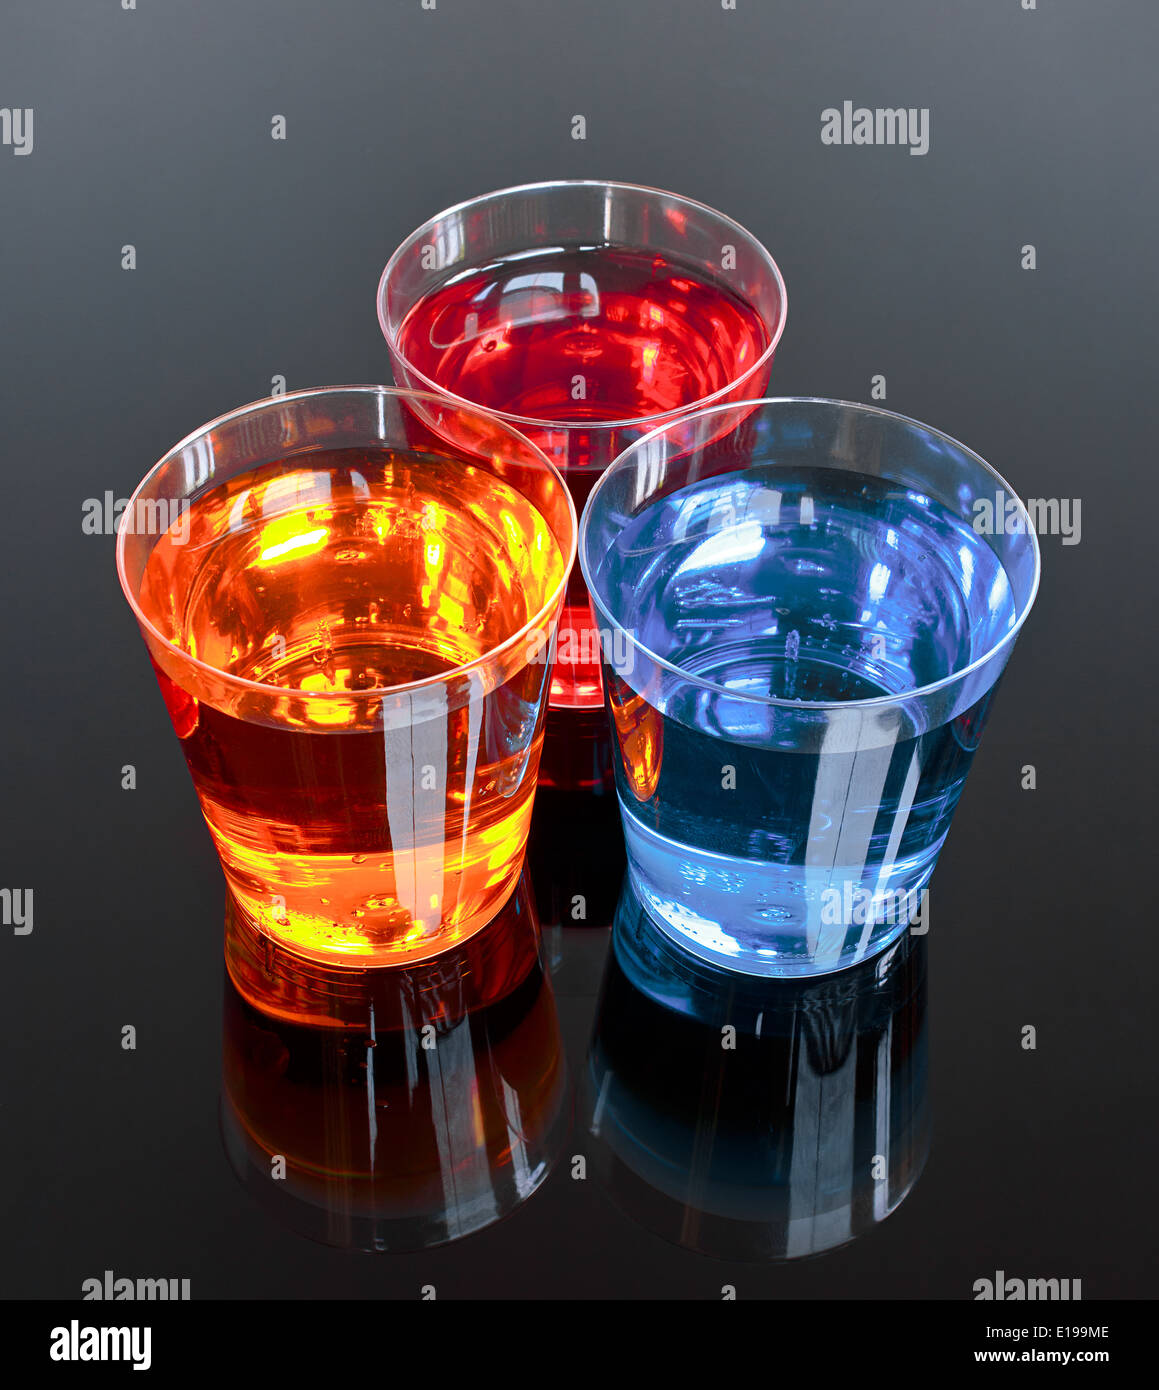 Drei Schüsse auf einem schwarzen Hintergrund perfekt für Werbeaktionen oder Angebot in der alkoholischen Getränkeindustrie Stockfoto